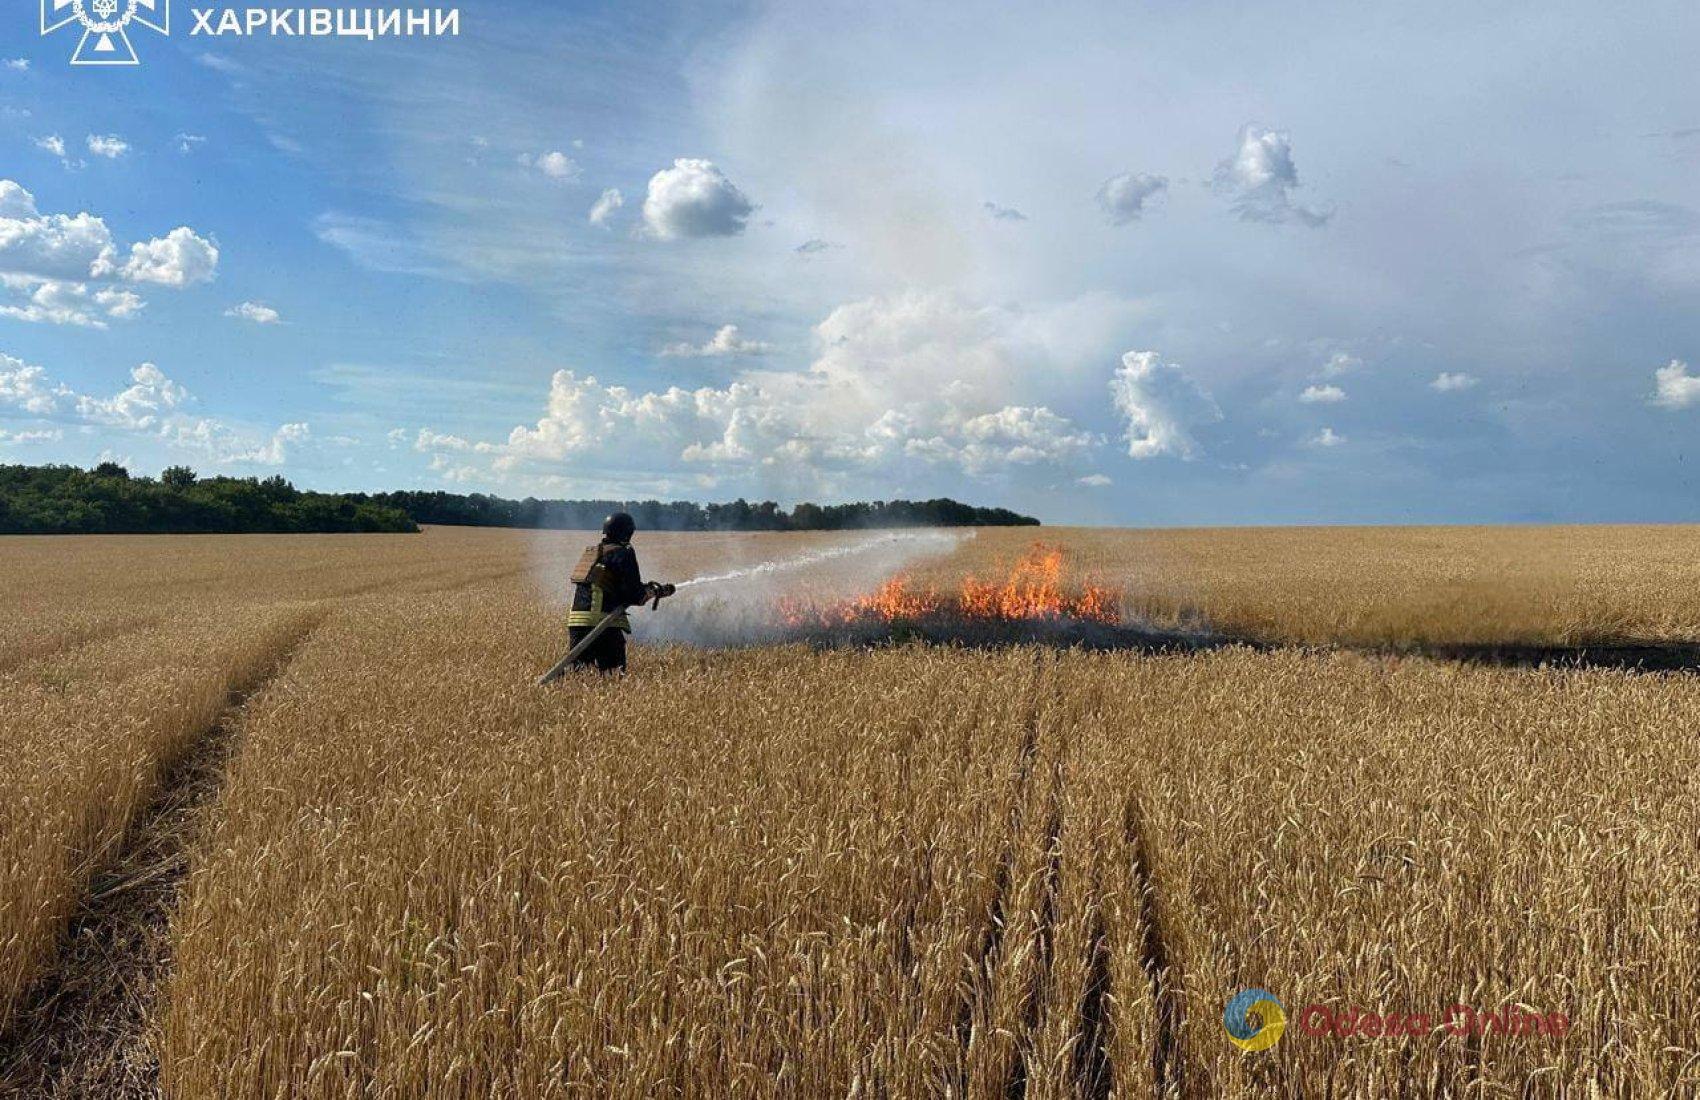 Россияне бьют FPV-дронами по полям, чтобы сжечь урожай украинских фермеров